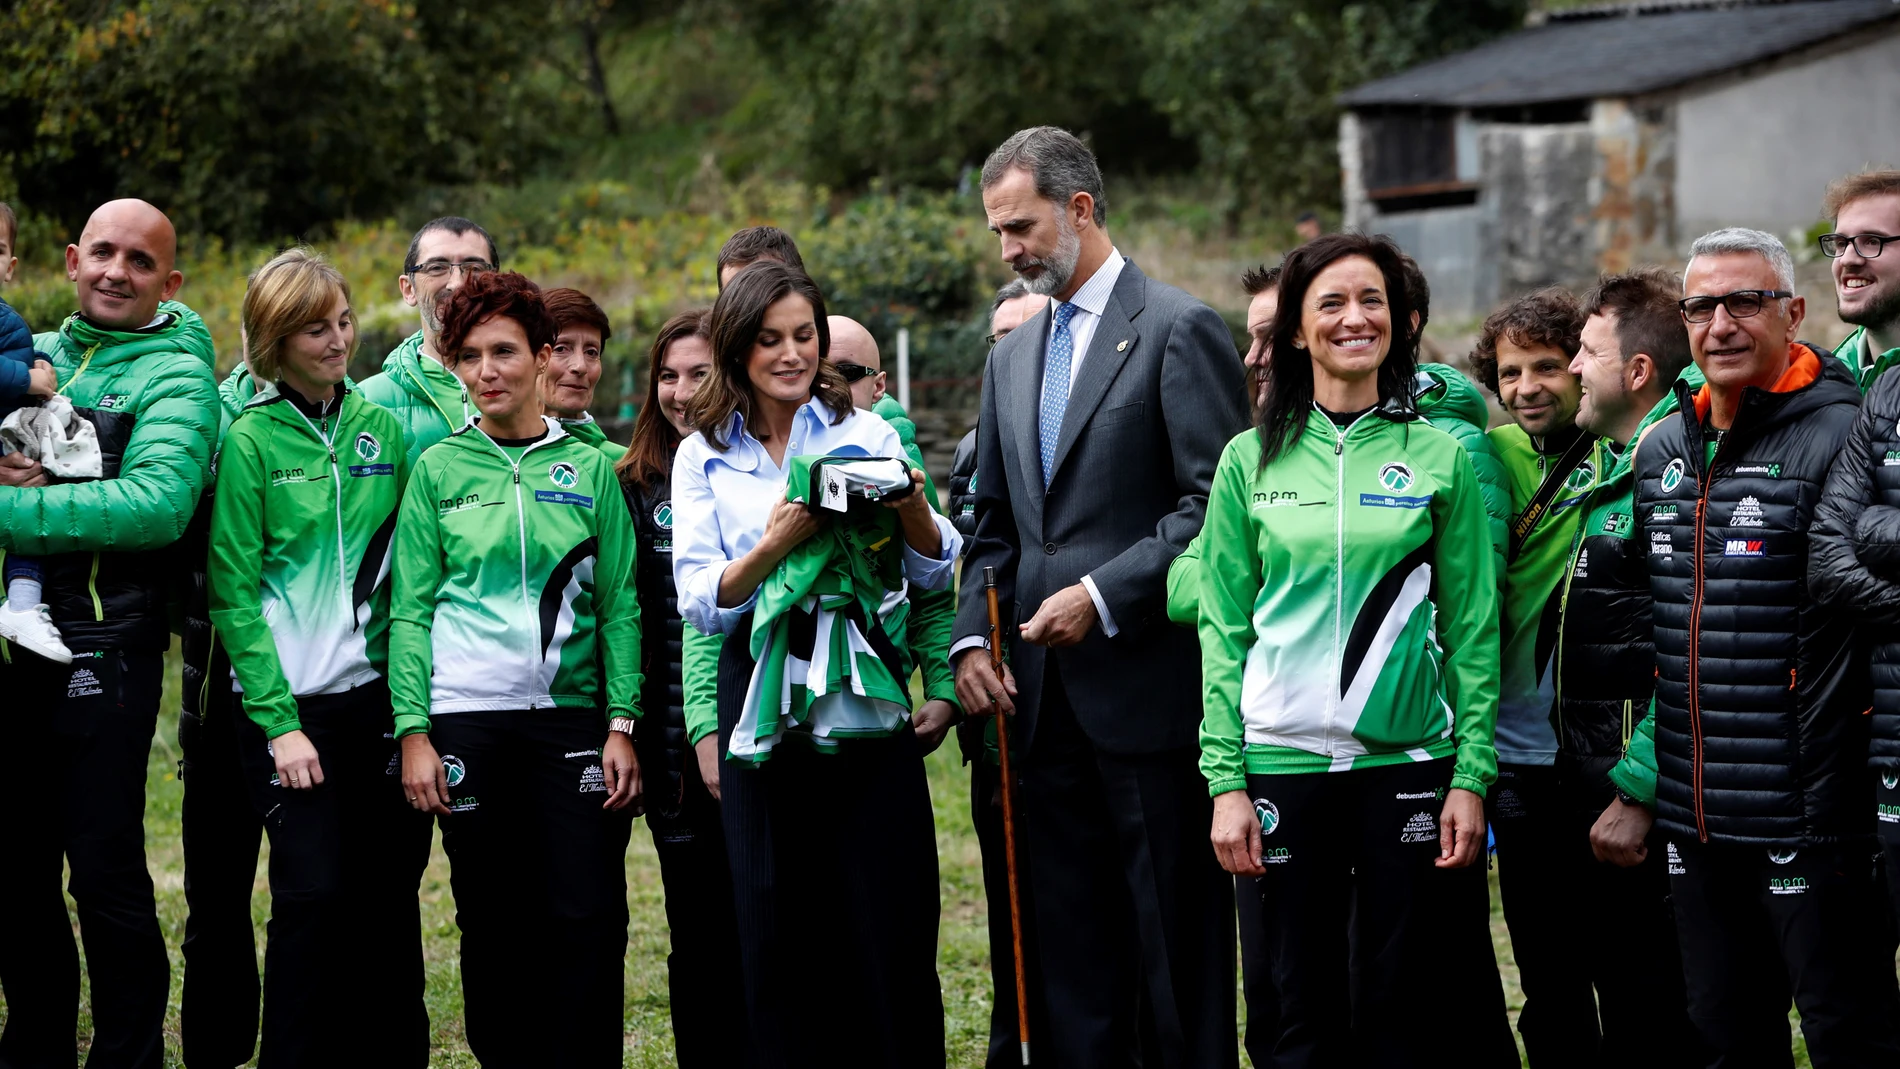 Los Reyes de España reciben una camiseta de la emblemática carrera de montaña "Puerta de Muniellos"